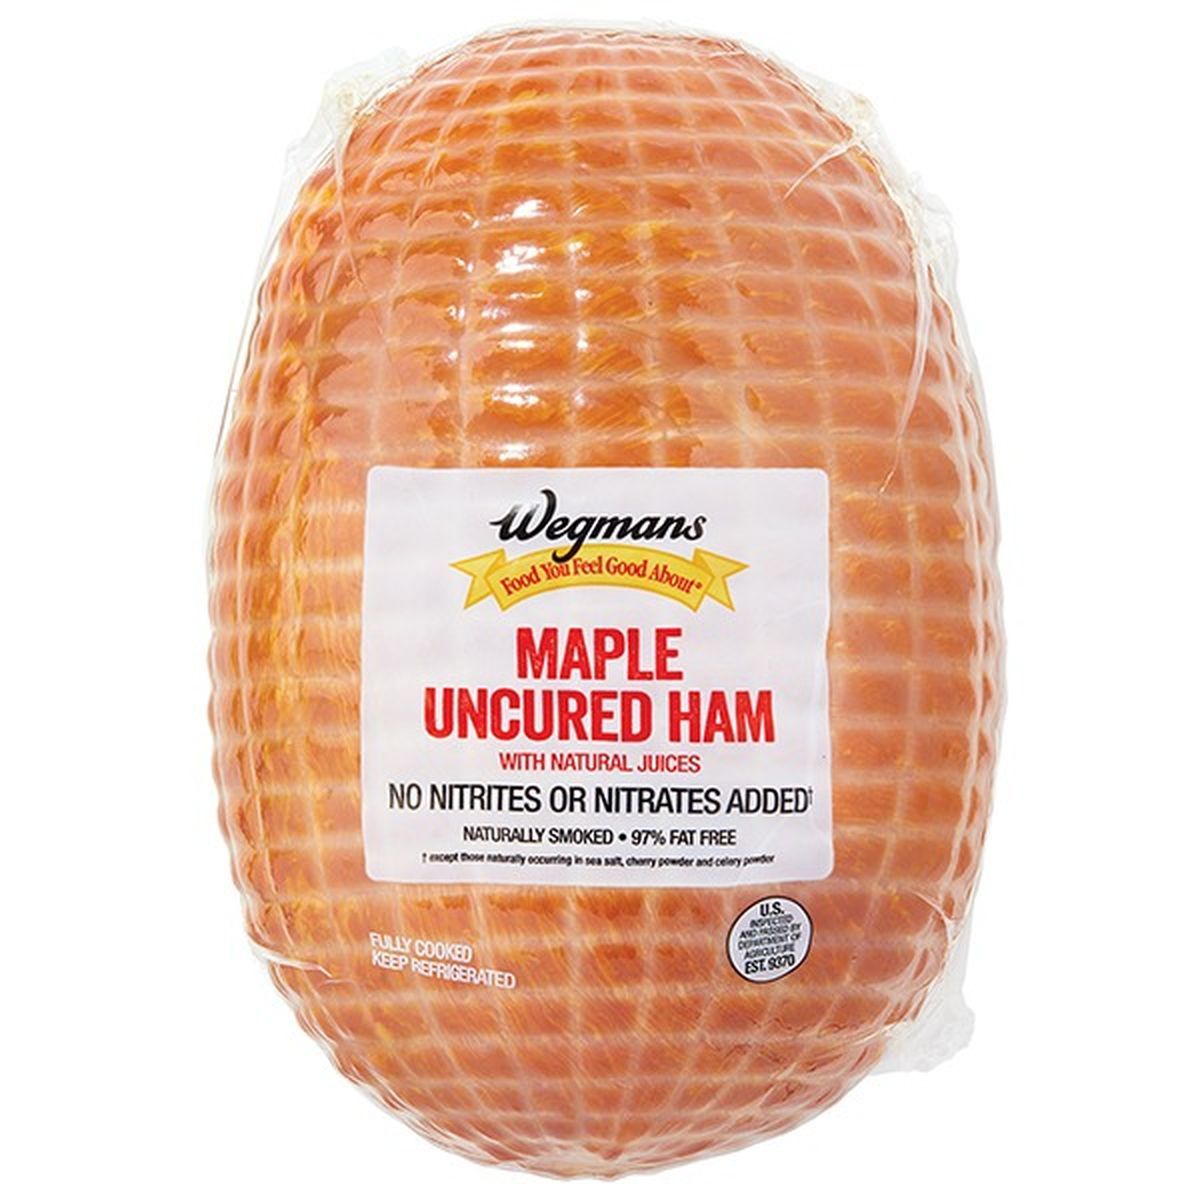 Calories in Wegmans Uncured Maple Ham